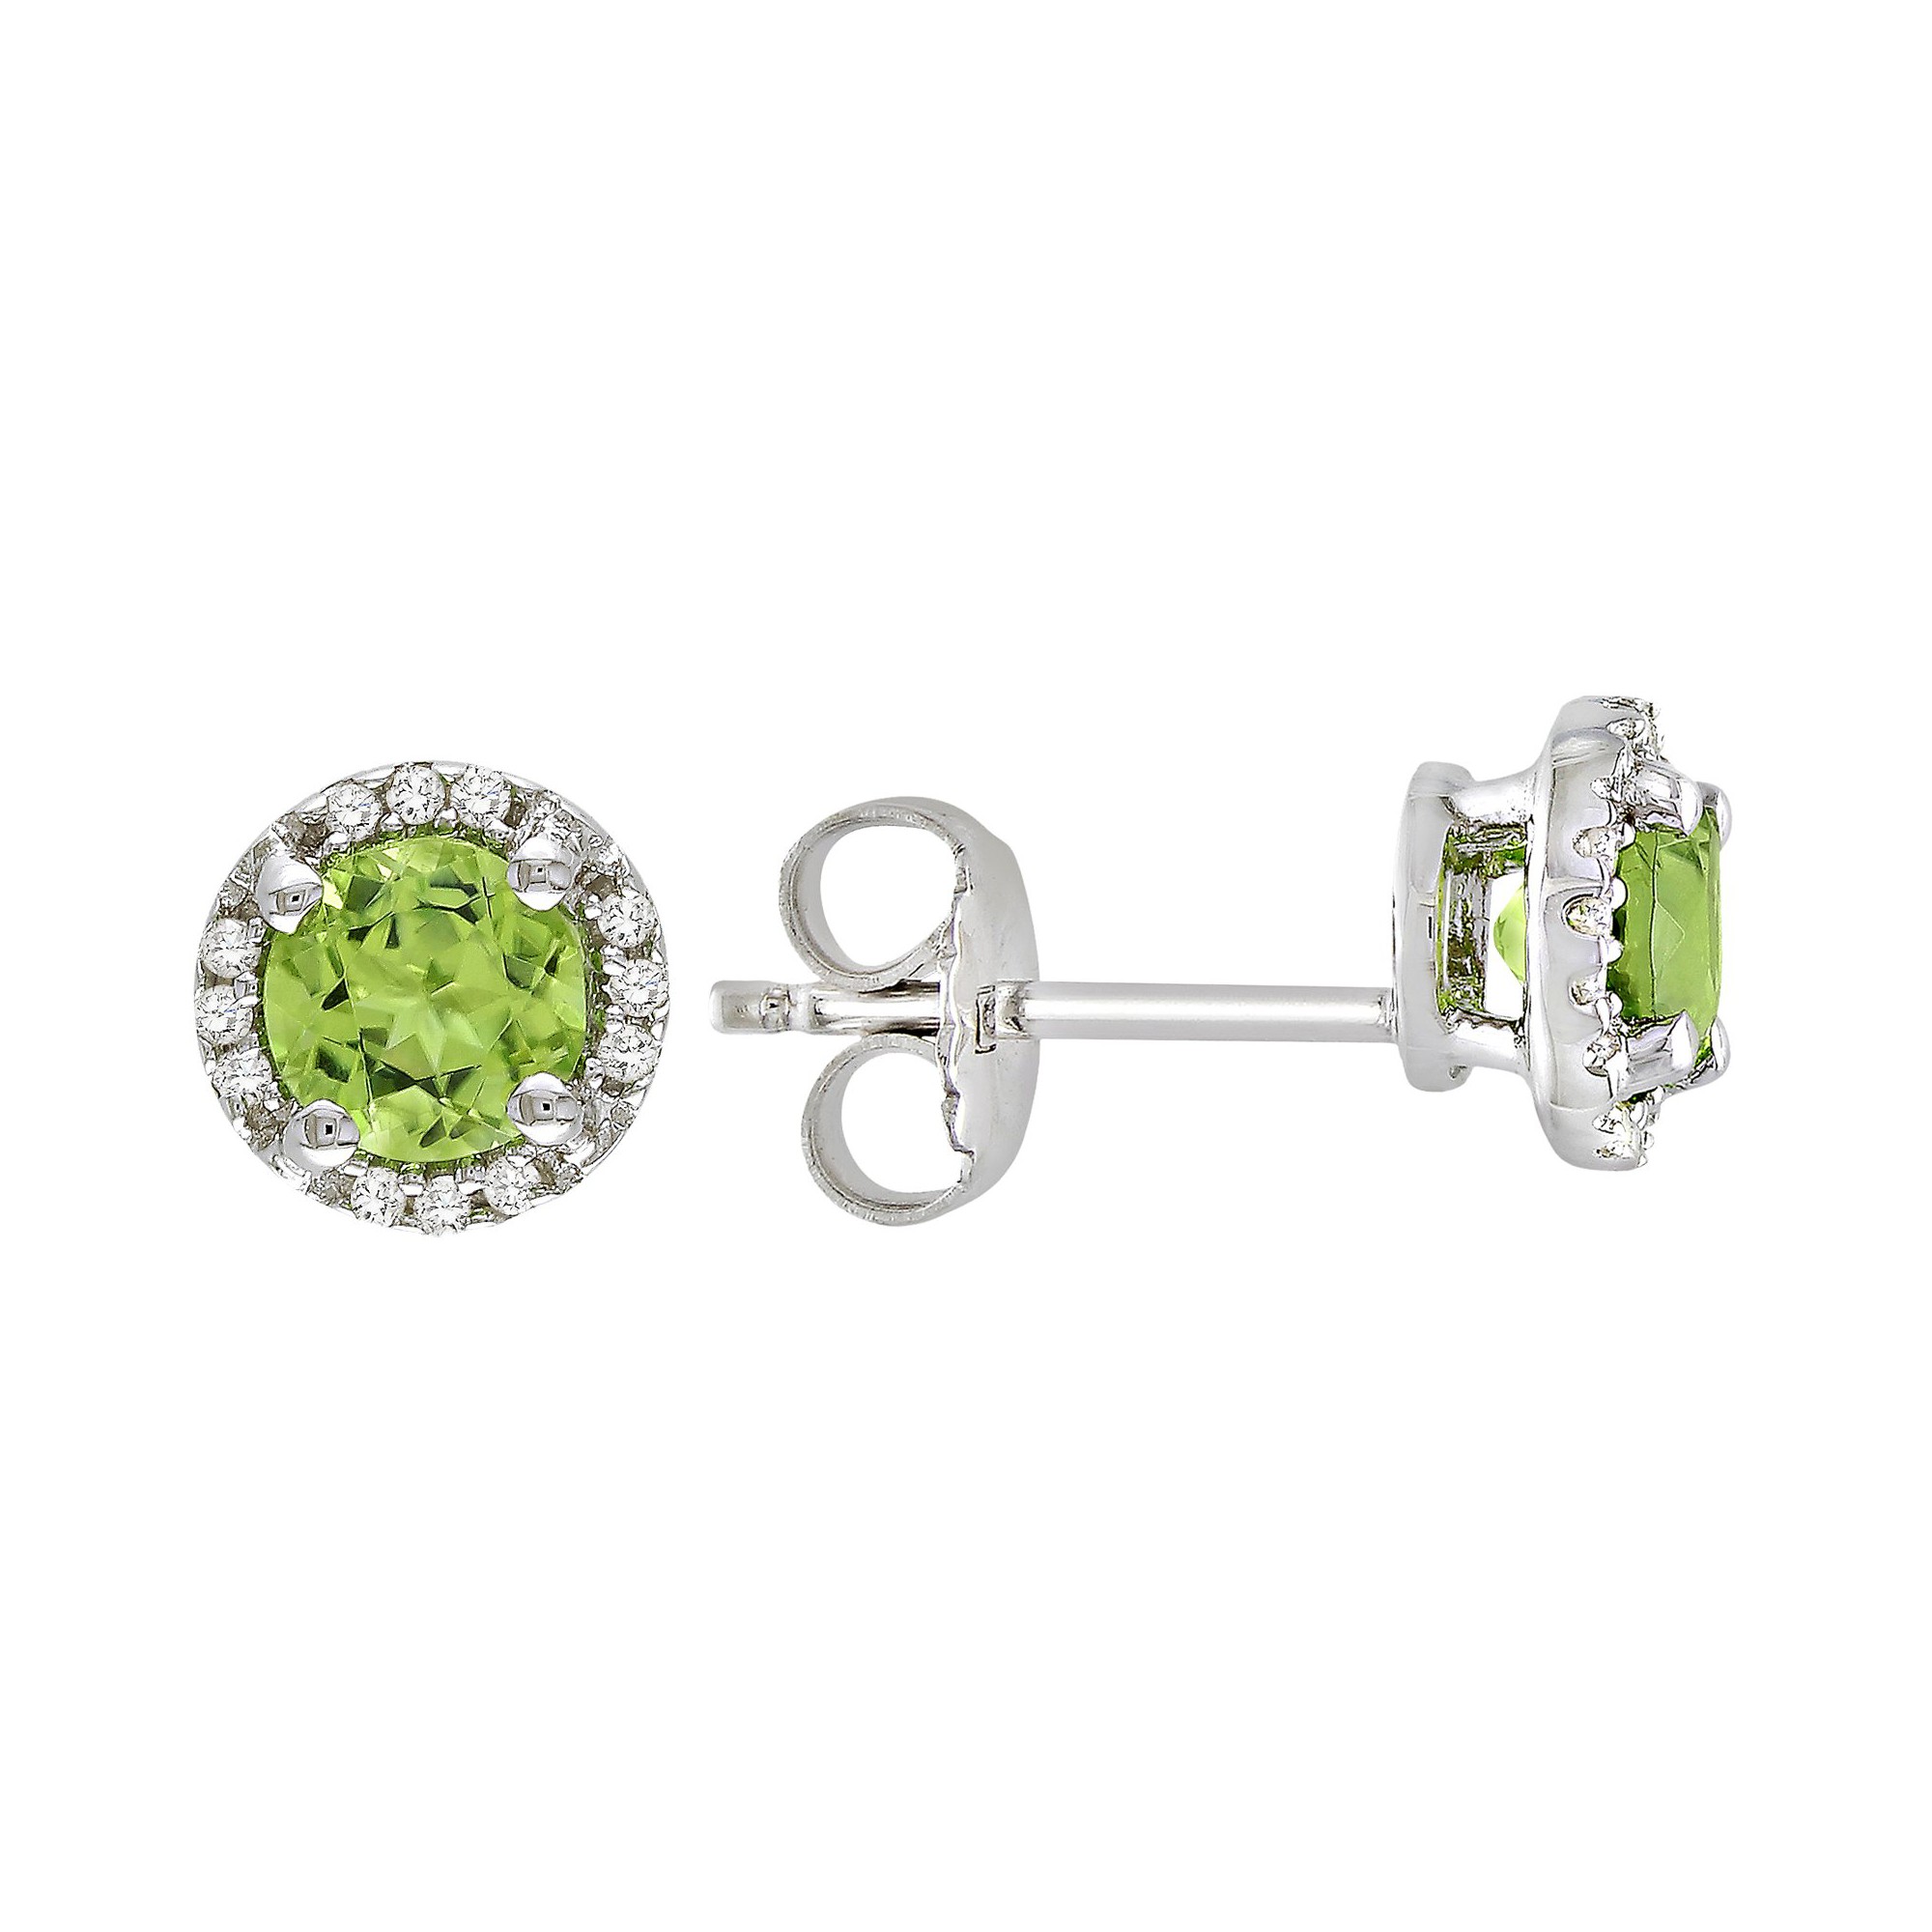 Peridot and Diamond Earrings in Sterling Silver - Green, Women's